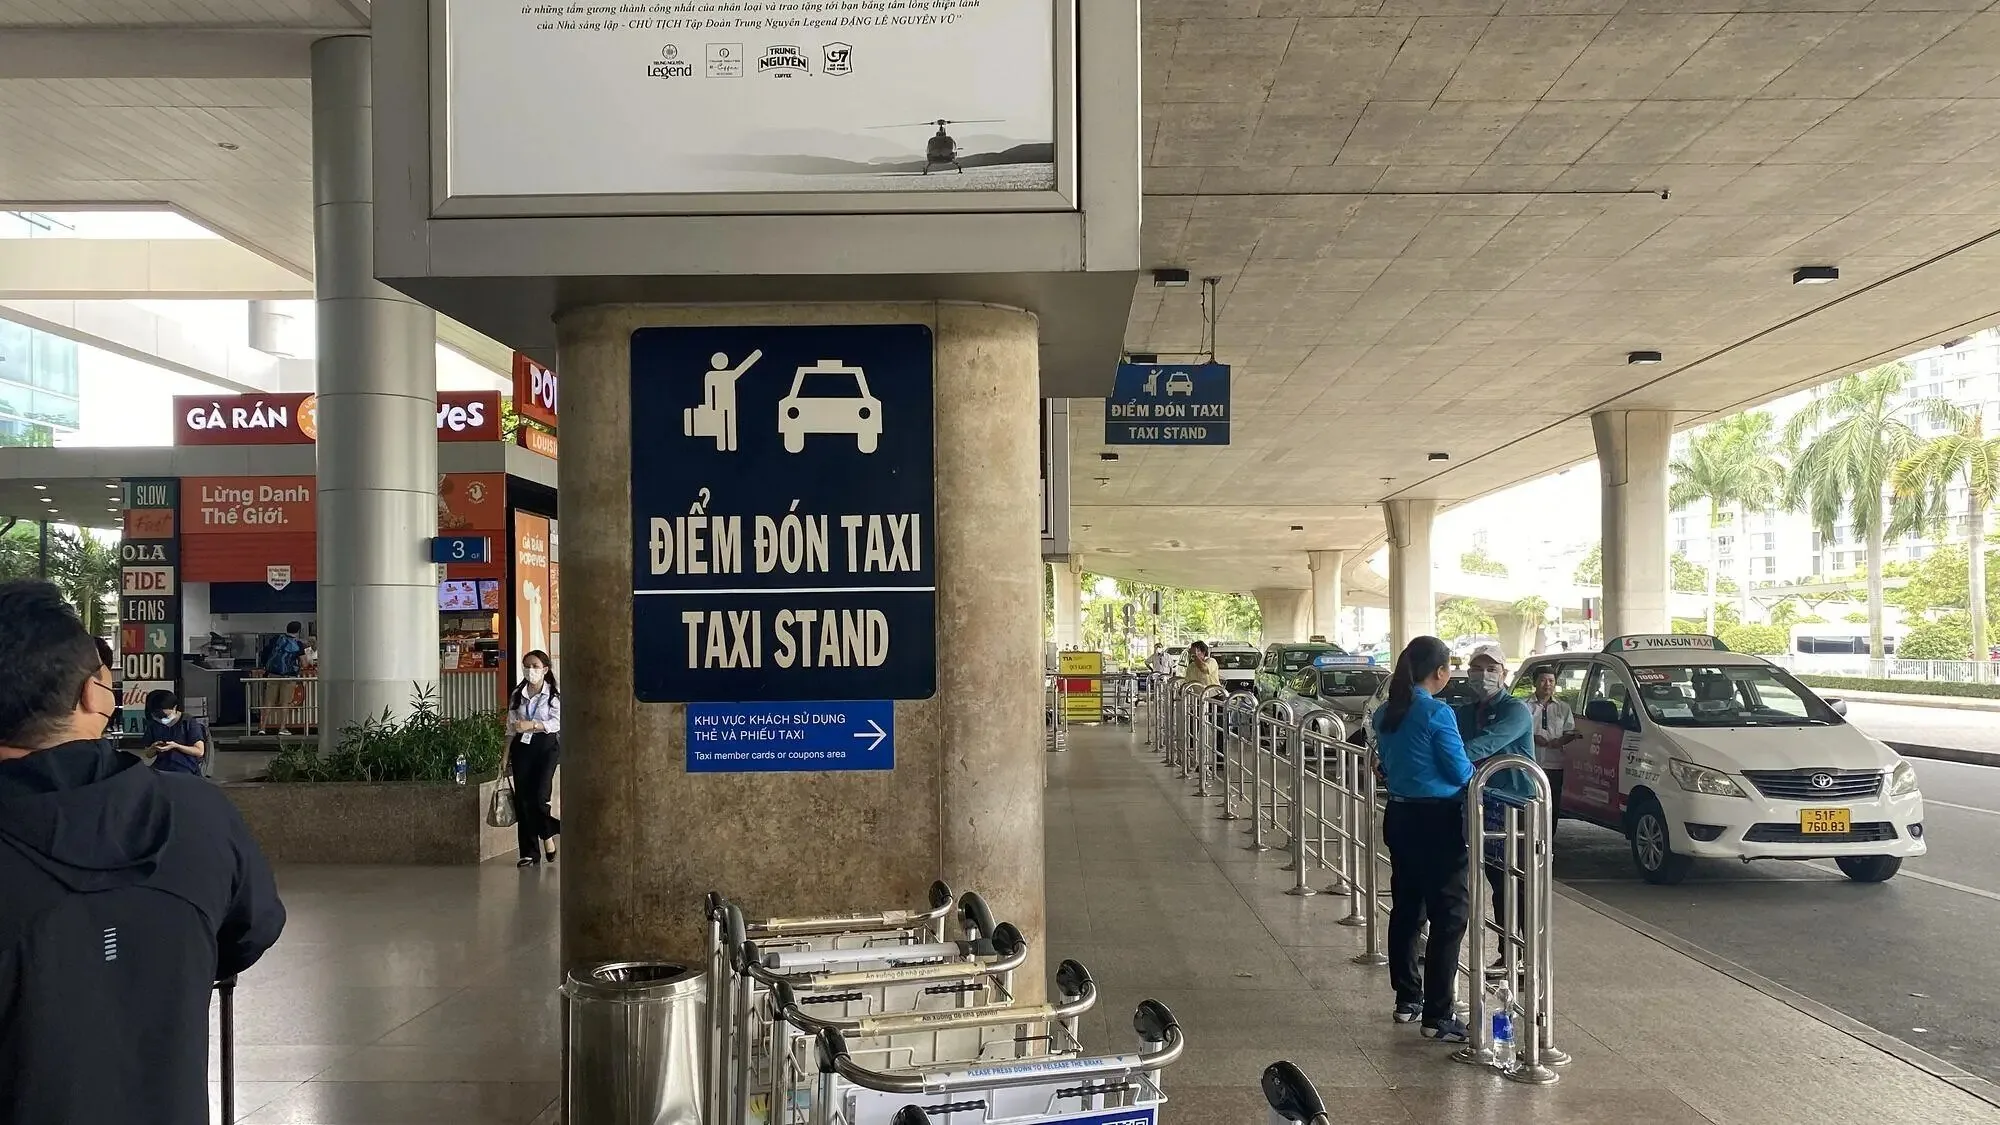 ホーチミン空港のタクシー乗り場の写真
